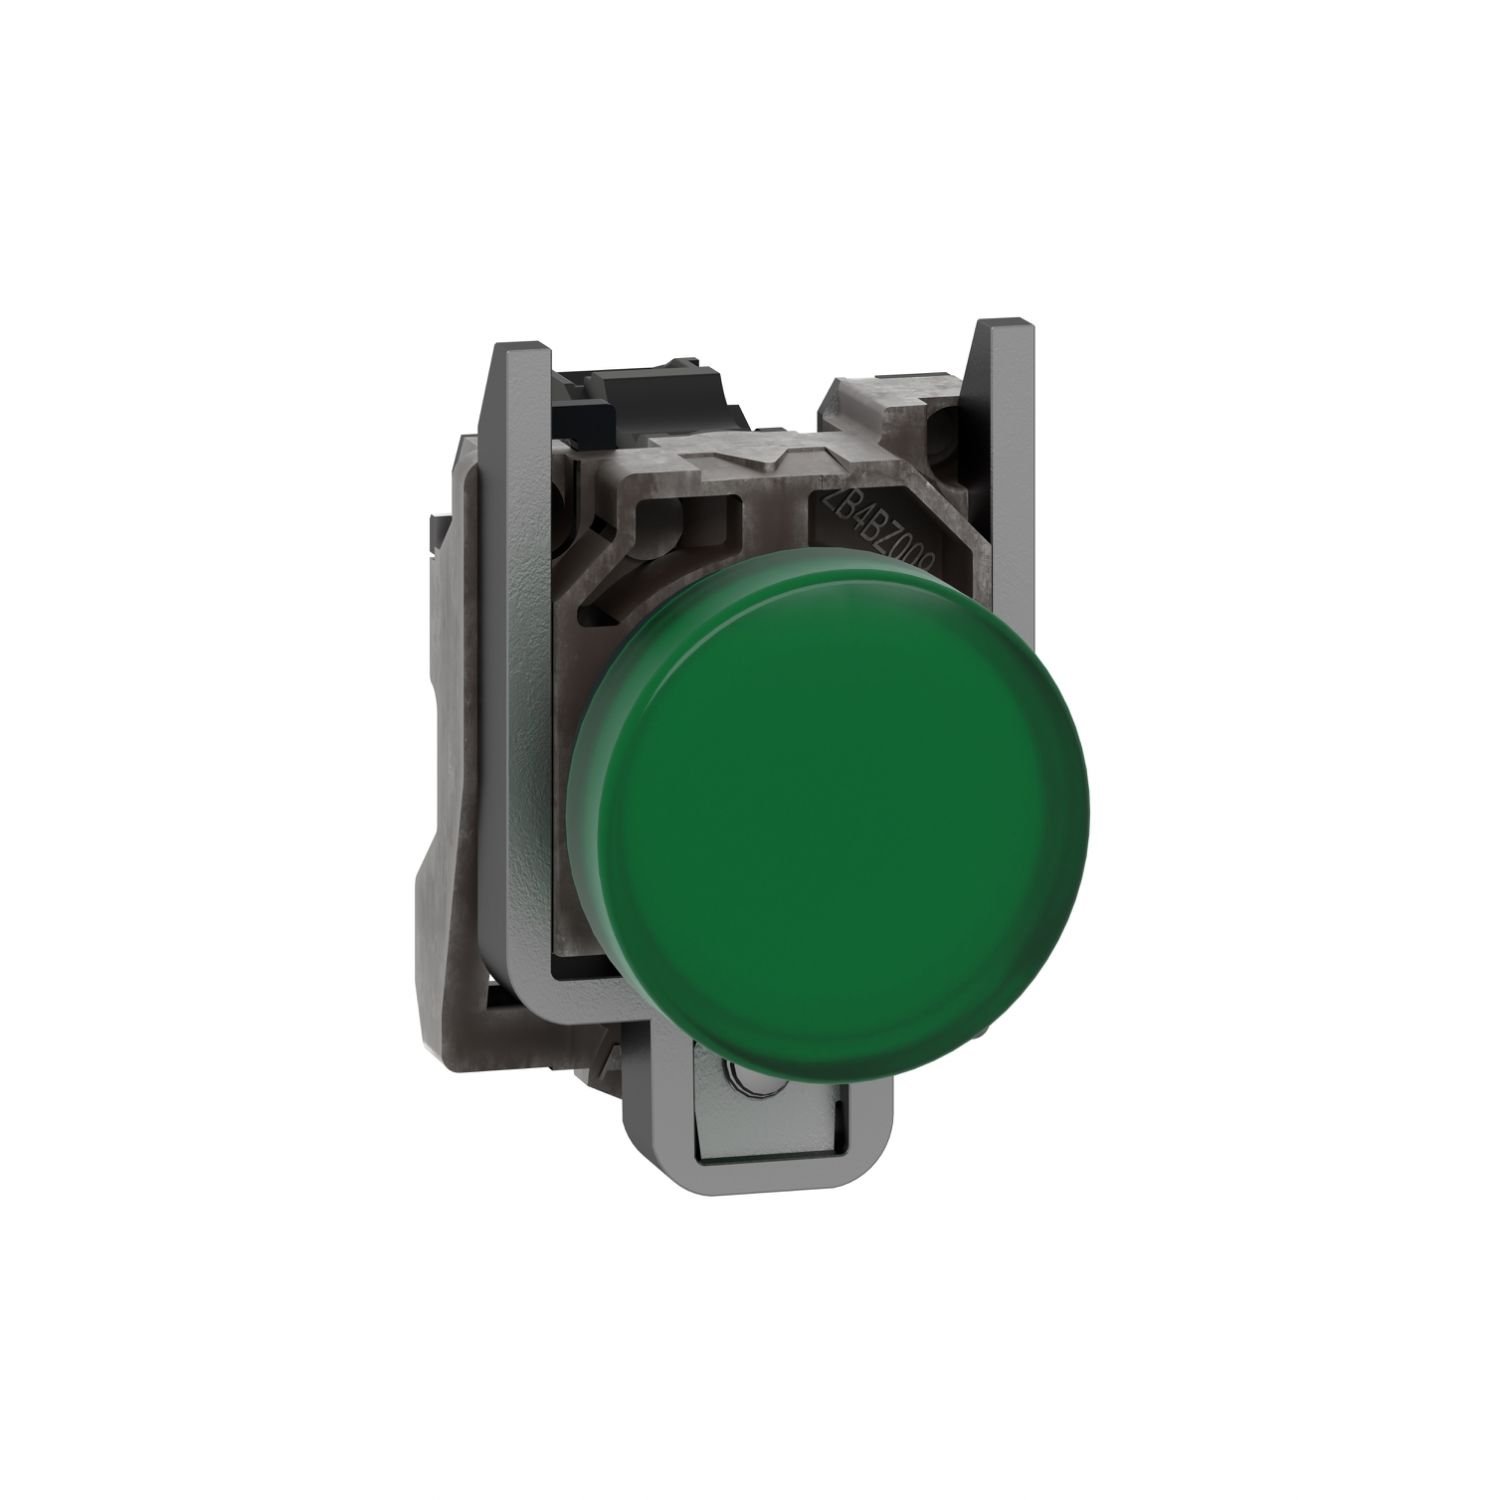 XB4BVM3 XB4BVM3 - Pilot light, metal, green, Ã˜22, plain lens with integral LED, 230...240 VAC